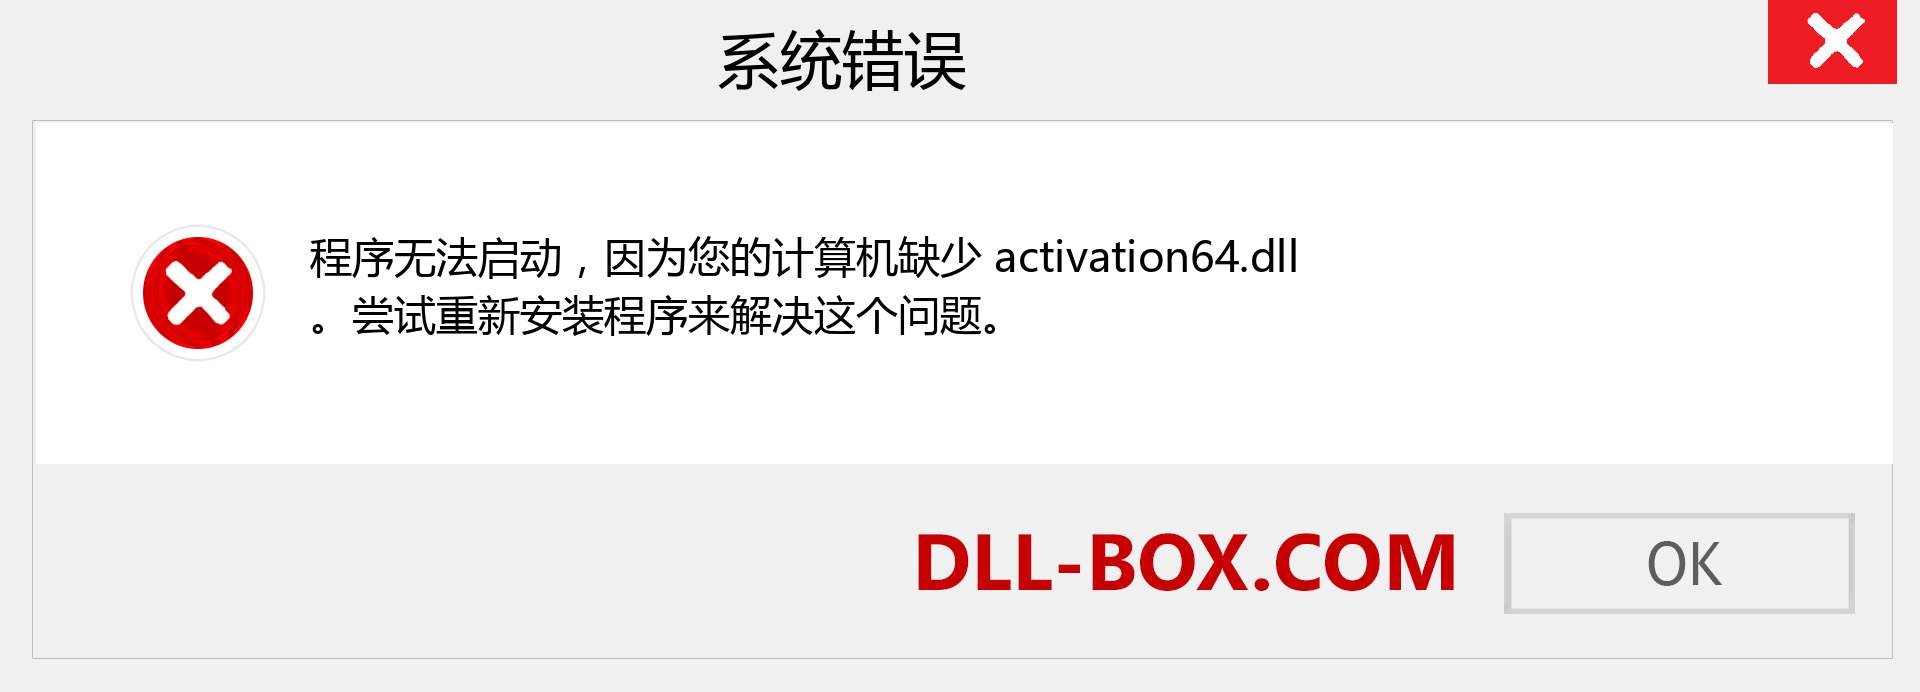 activation64.dll 文件丢失？。 适用于 Windows 7、8、10 的下载 - 修复 Windows、照片、图像上的 activation64 dll 丢失错误